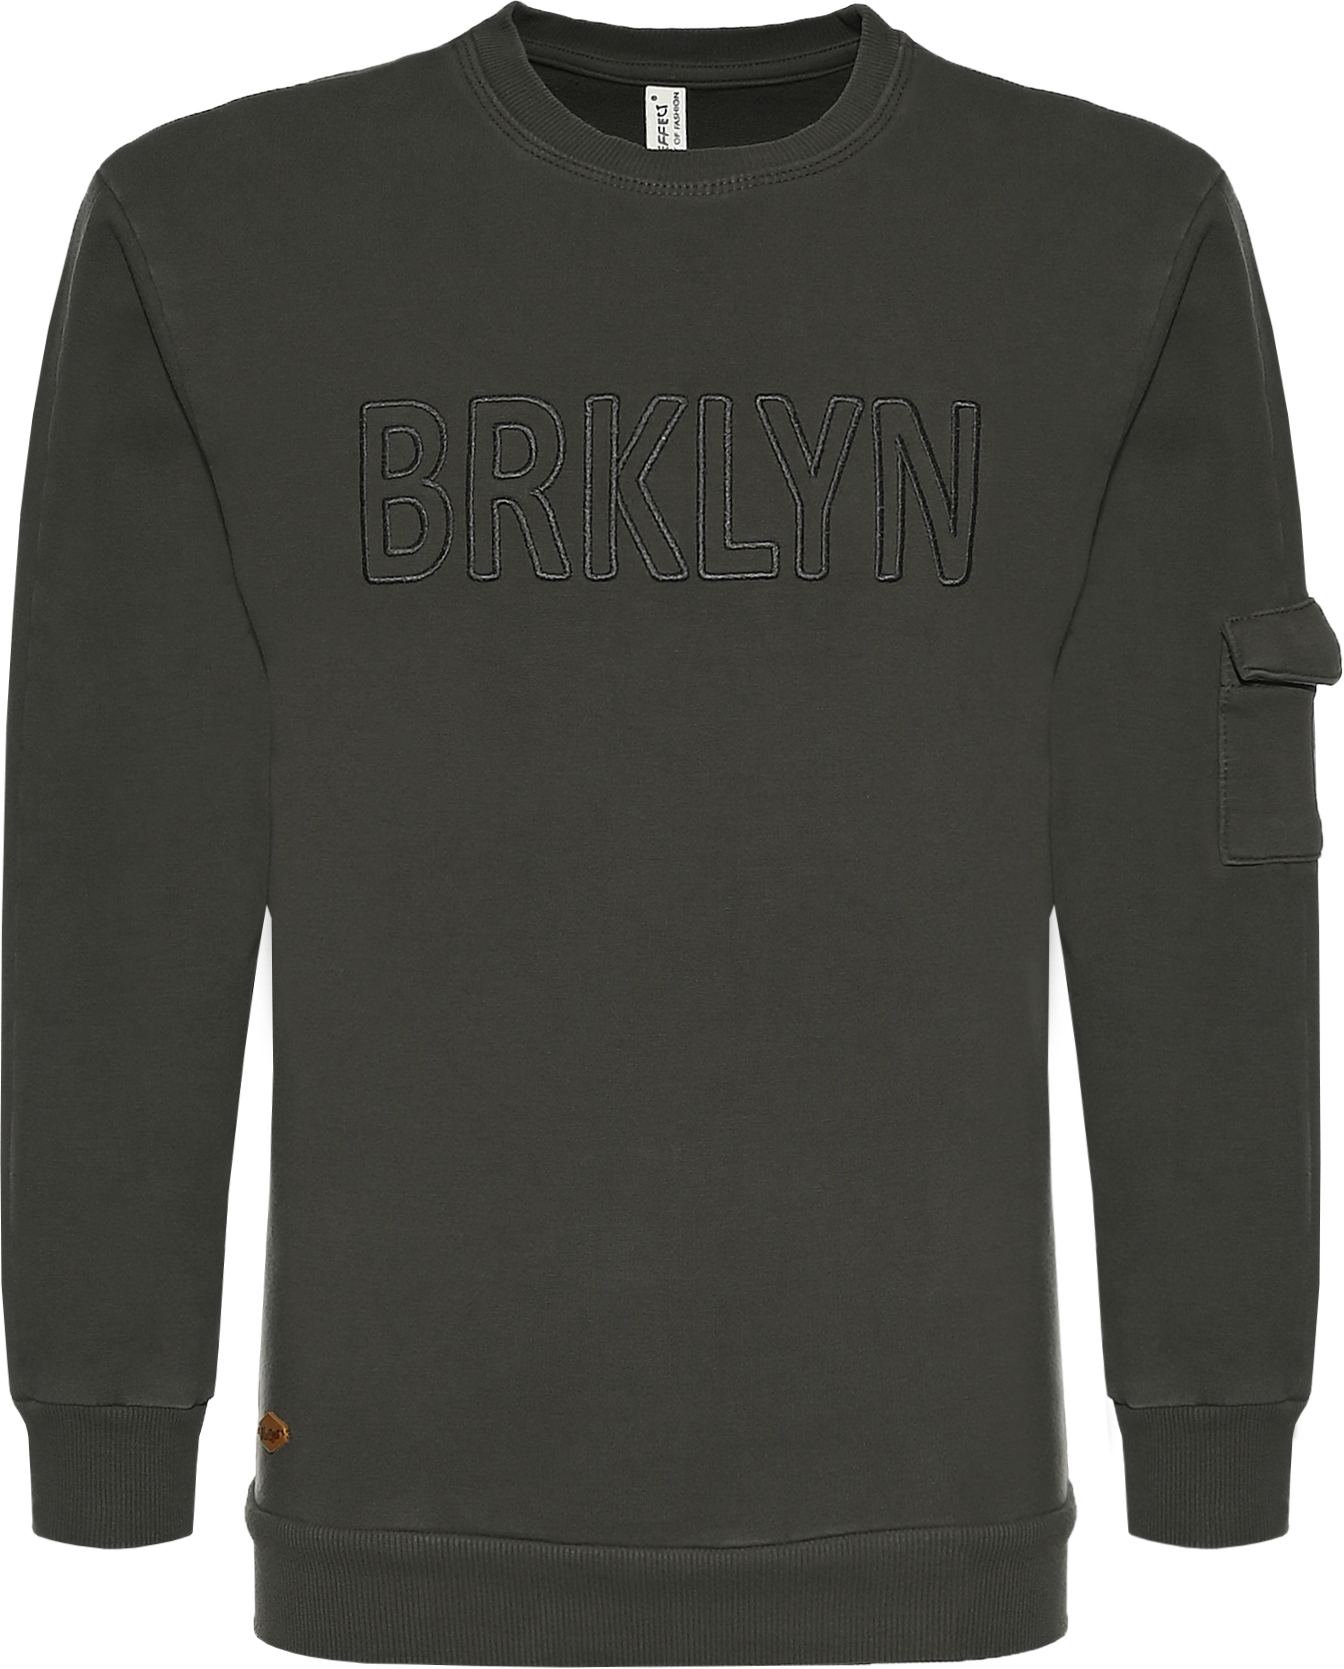 6114-Boys Sweatshirt -BRKLYN